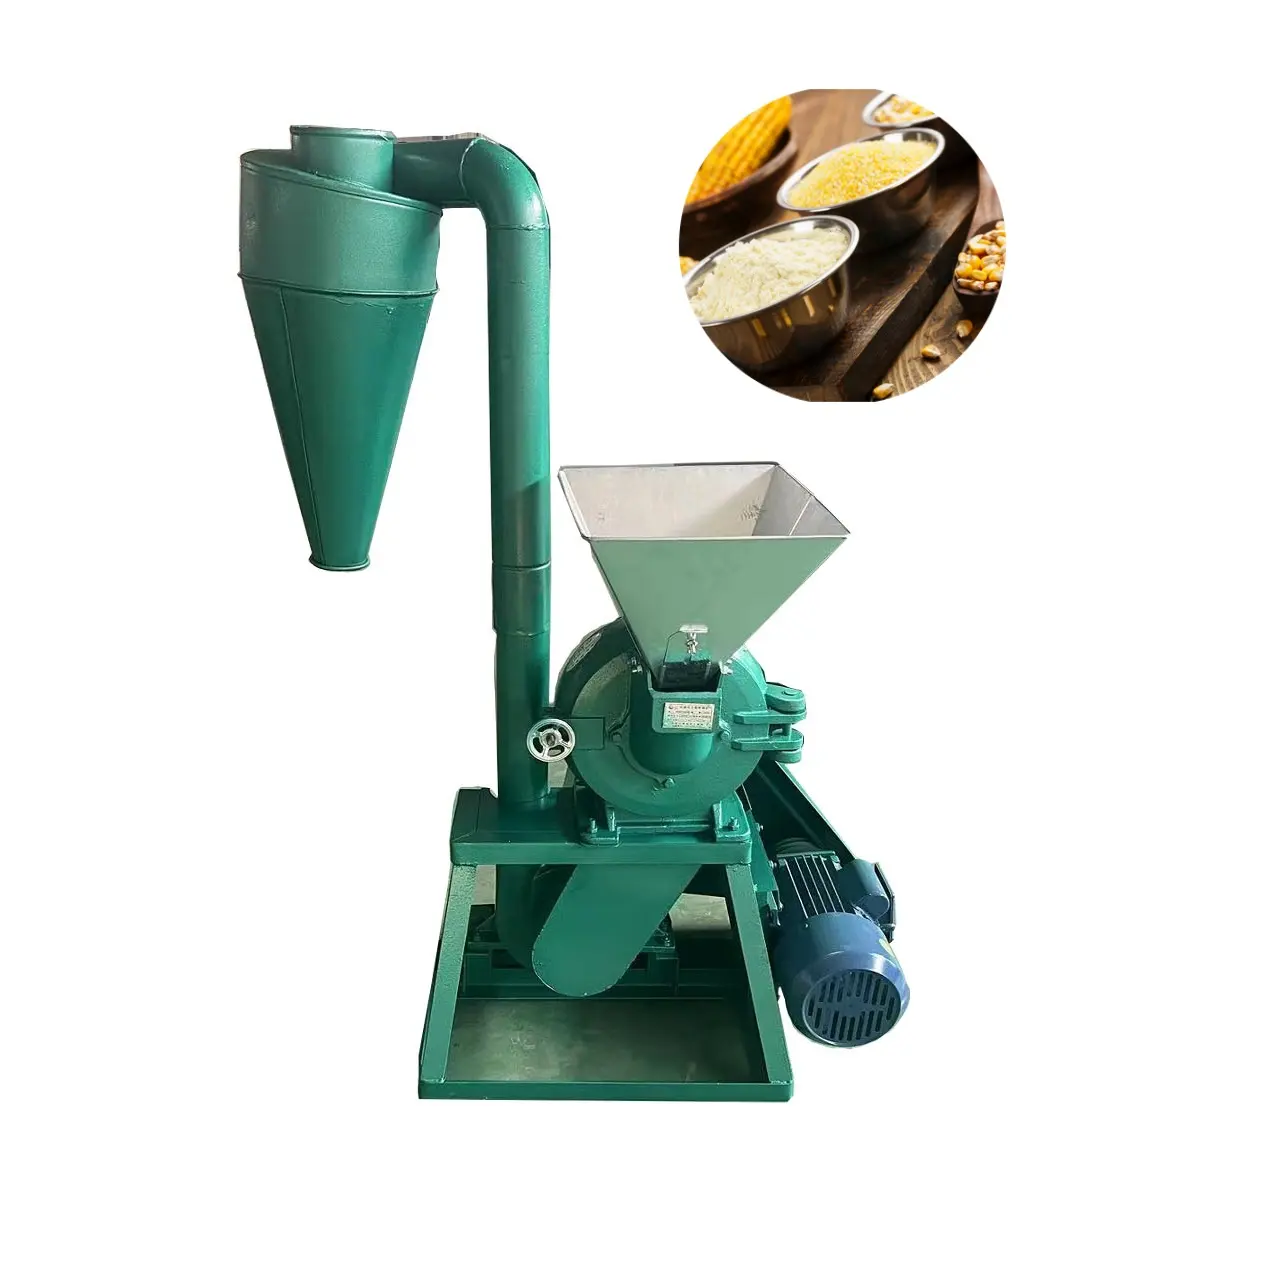 Spesifikasi lengkap bubuk sorgum pembuat gigi penghancur Grain mesin penggilingan/tepung mesin penggilingan maize untuk mesin diesel